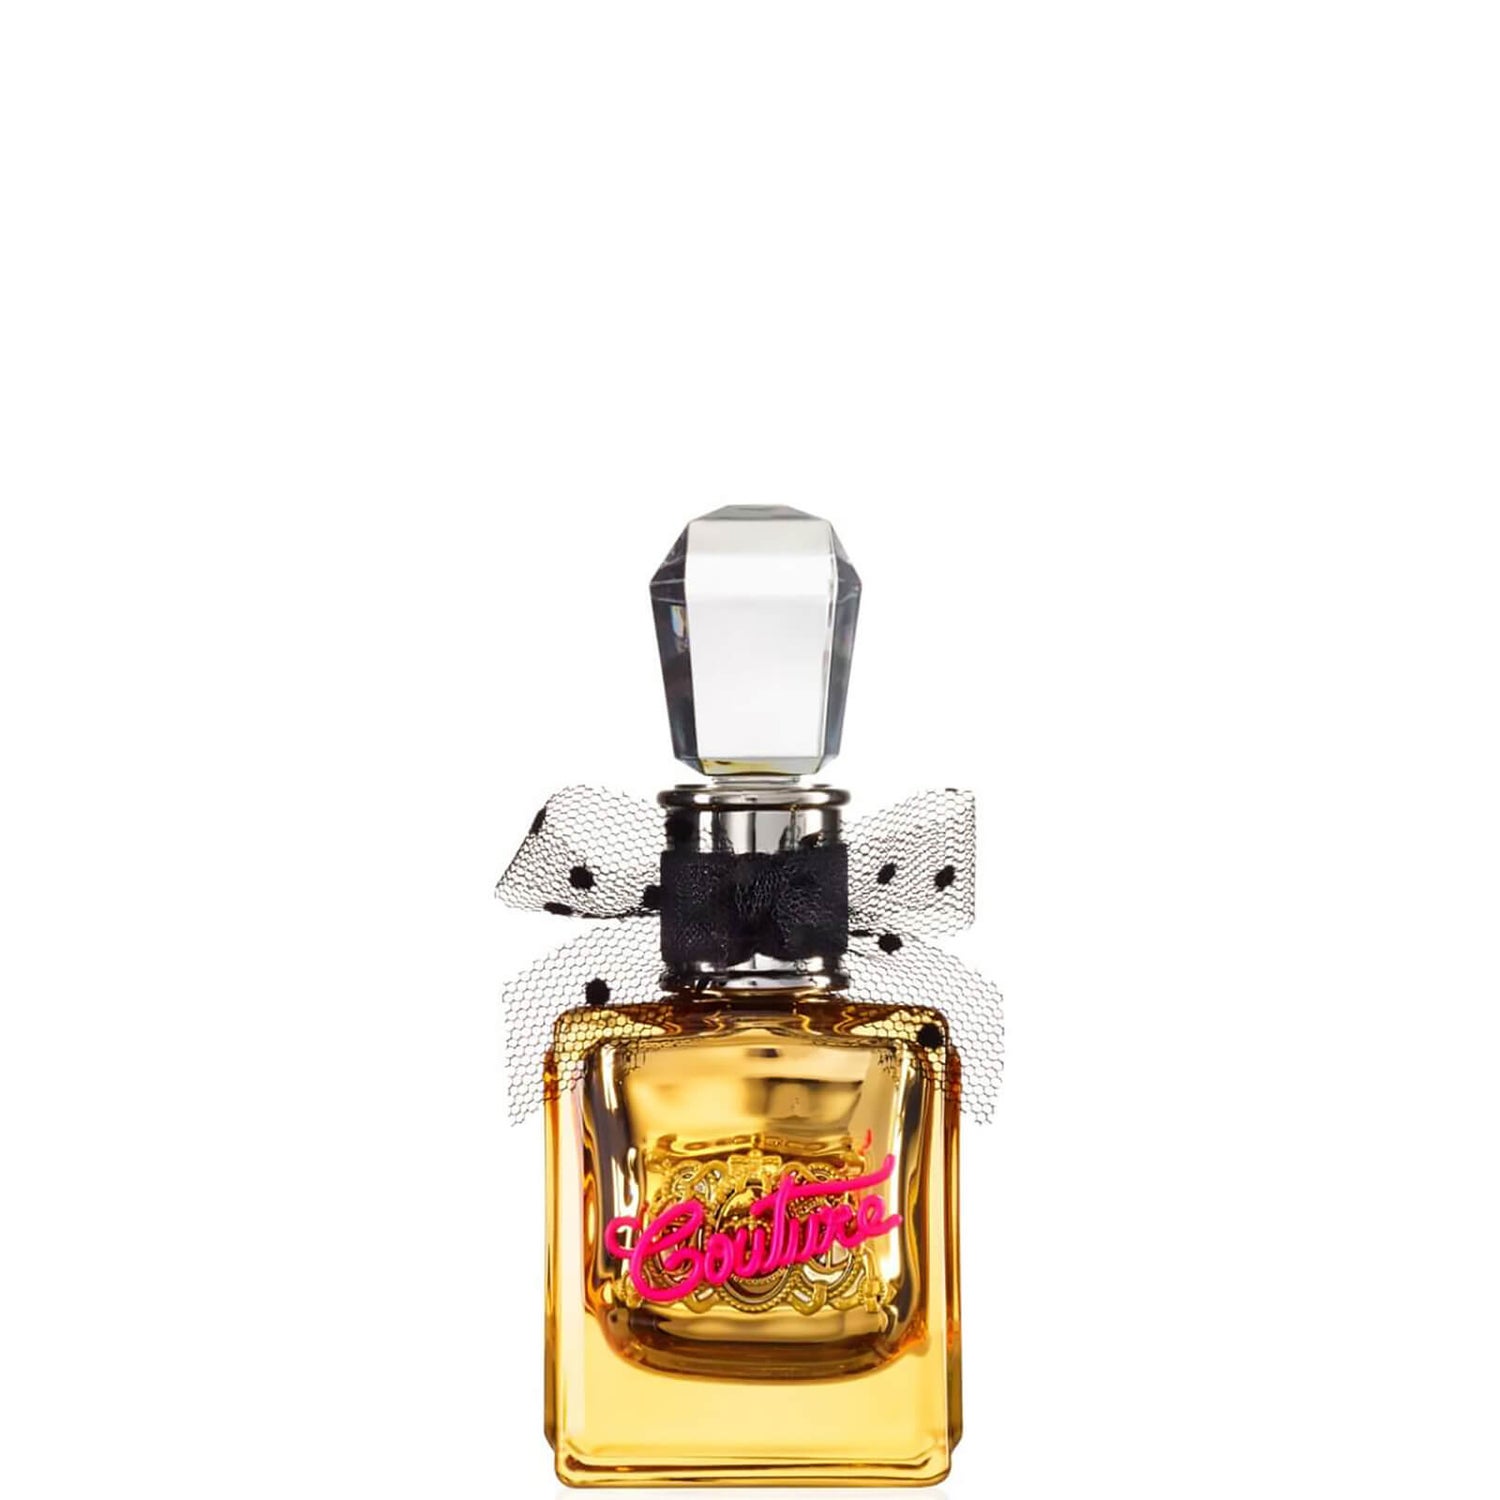 Juicy Couture Viva La Juicy Gold Eau de Parfum - 30ml 